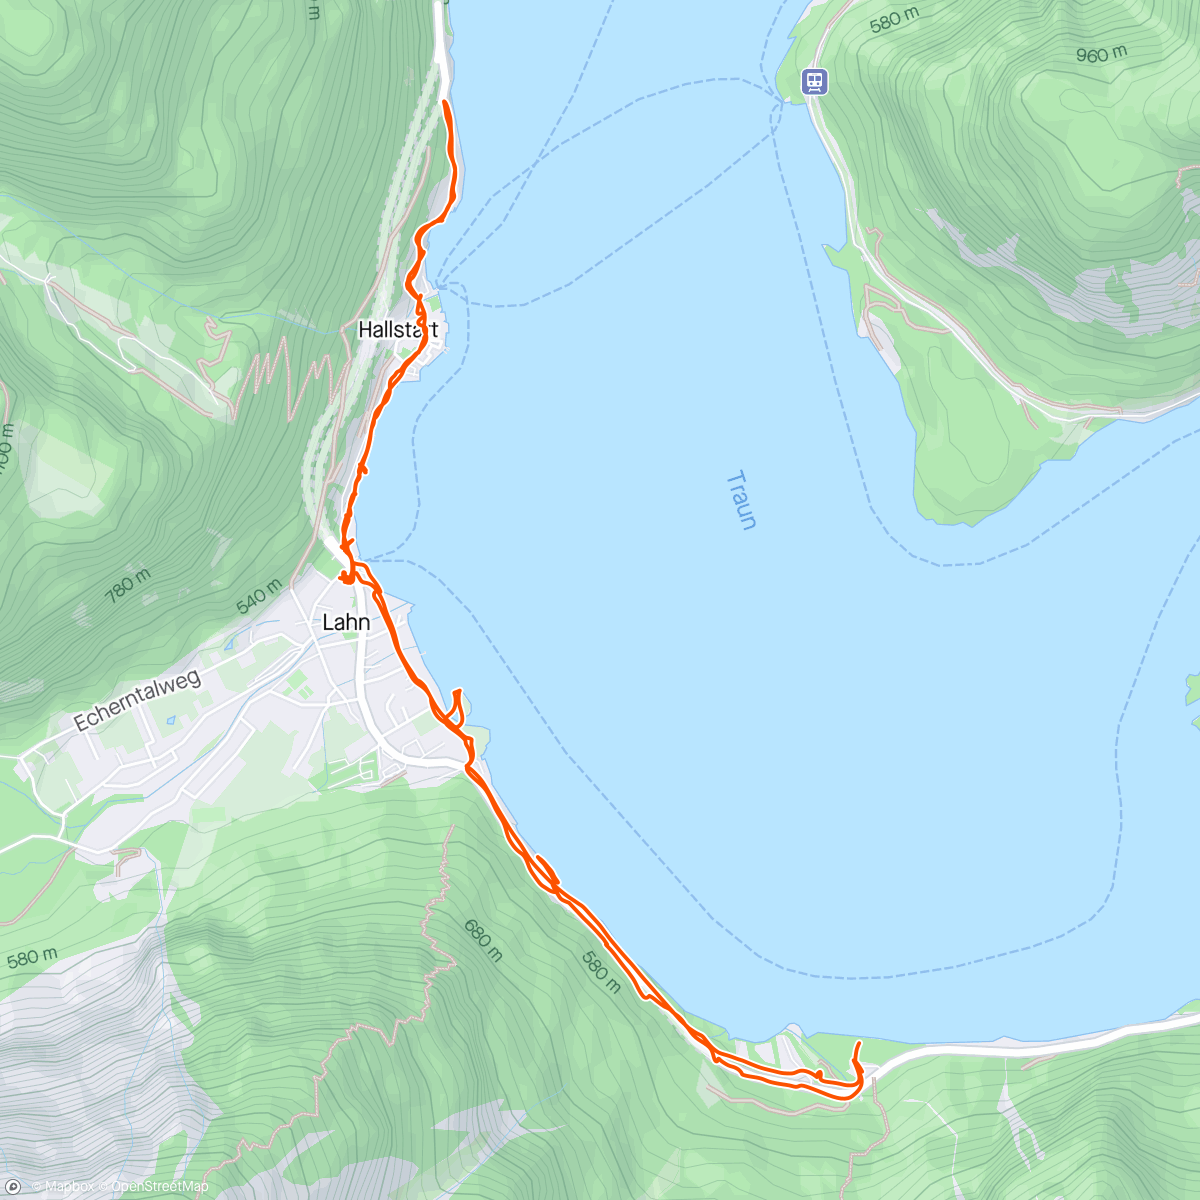 Mapa da atividade, Hallstatt